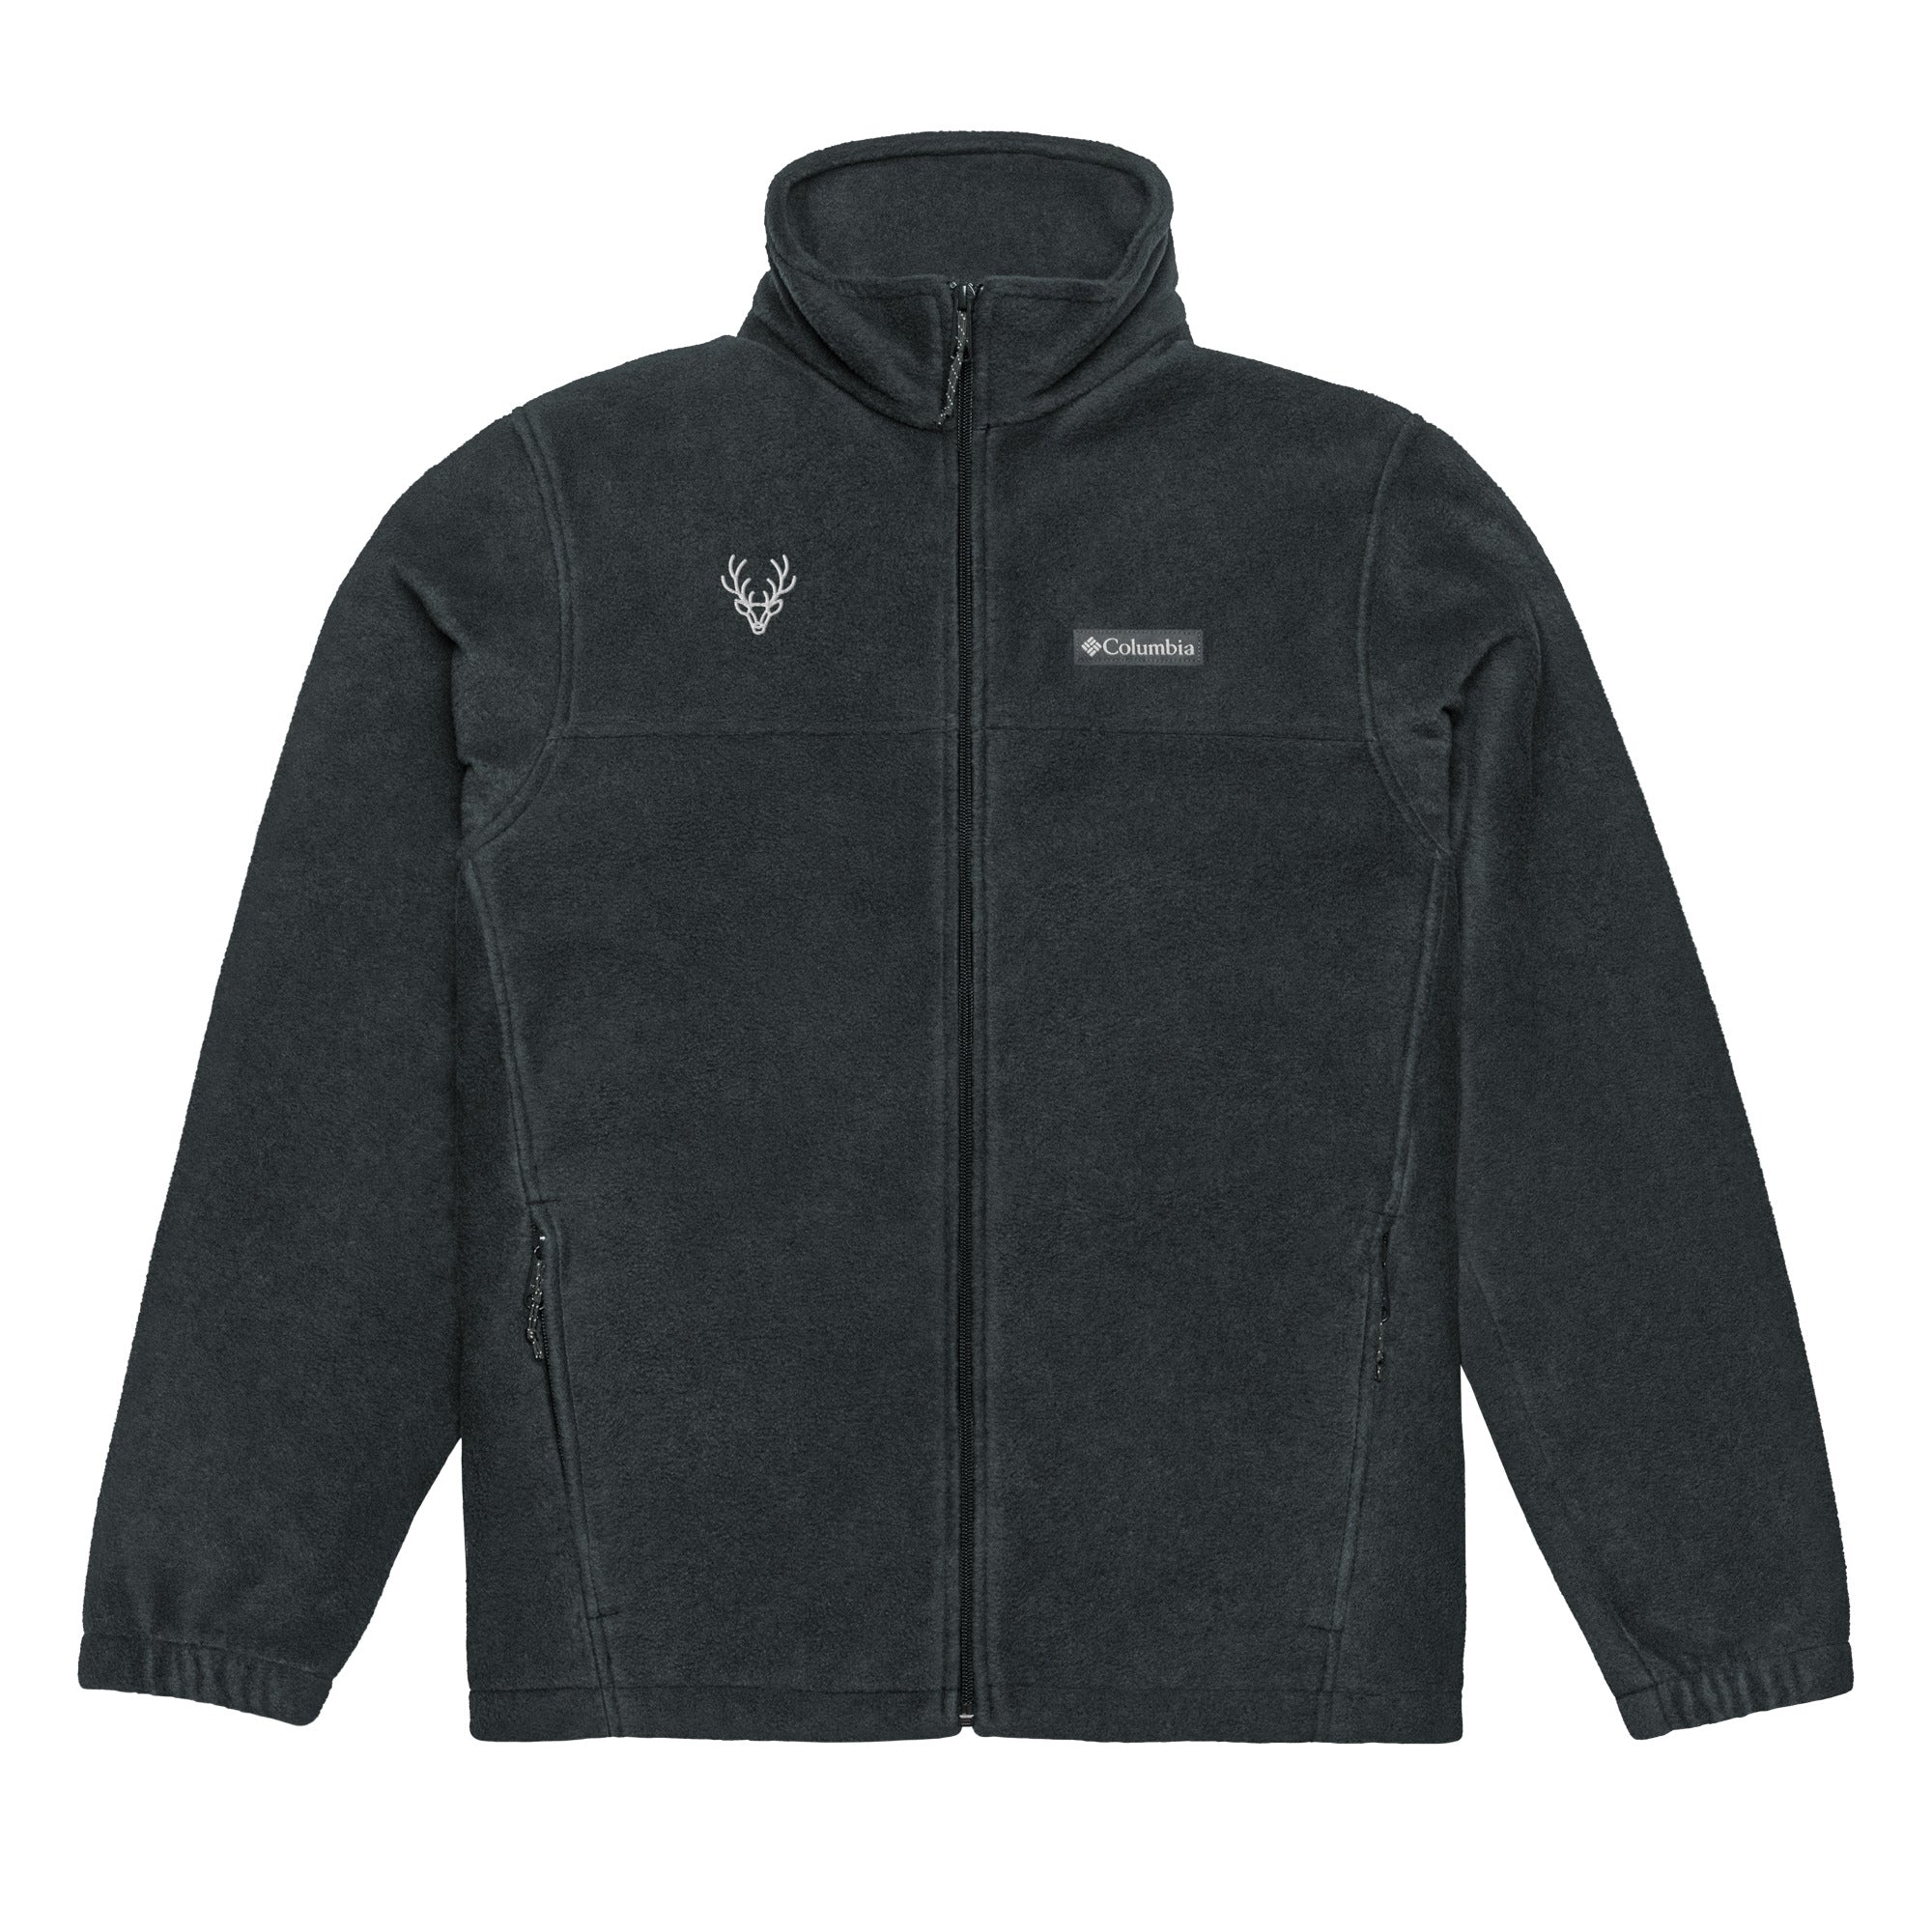 Columbia fleece jacket – AURORA clothing